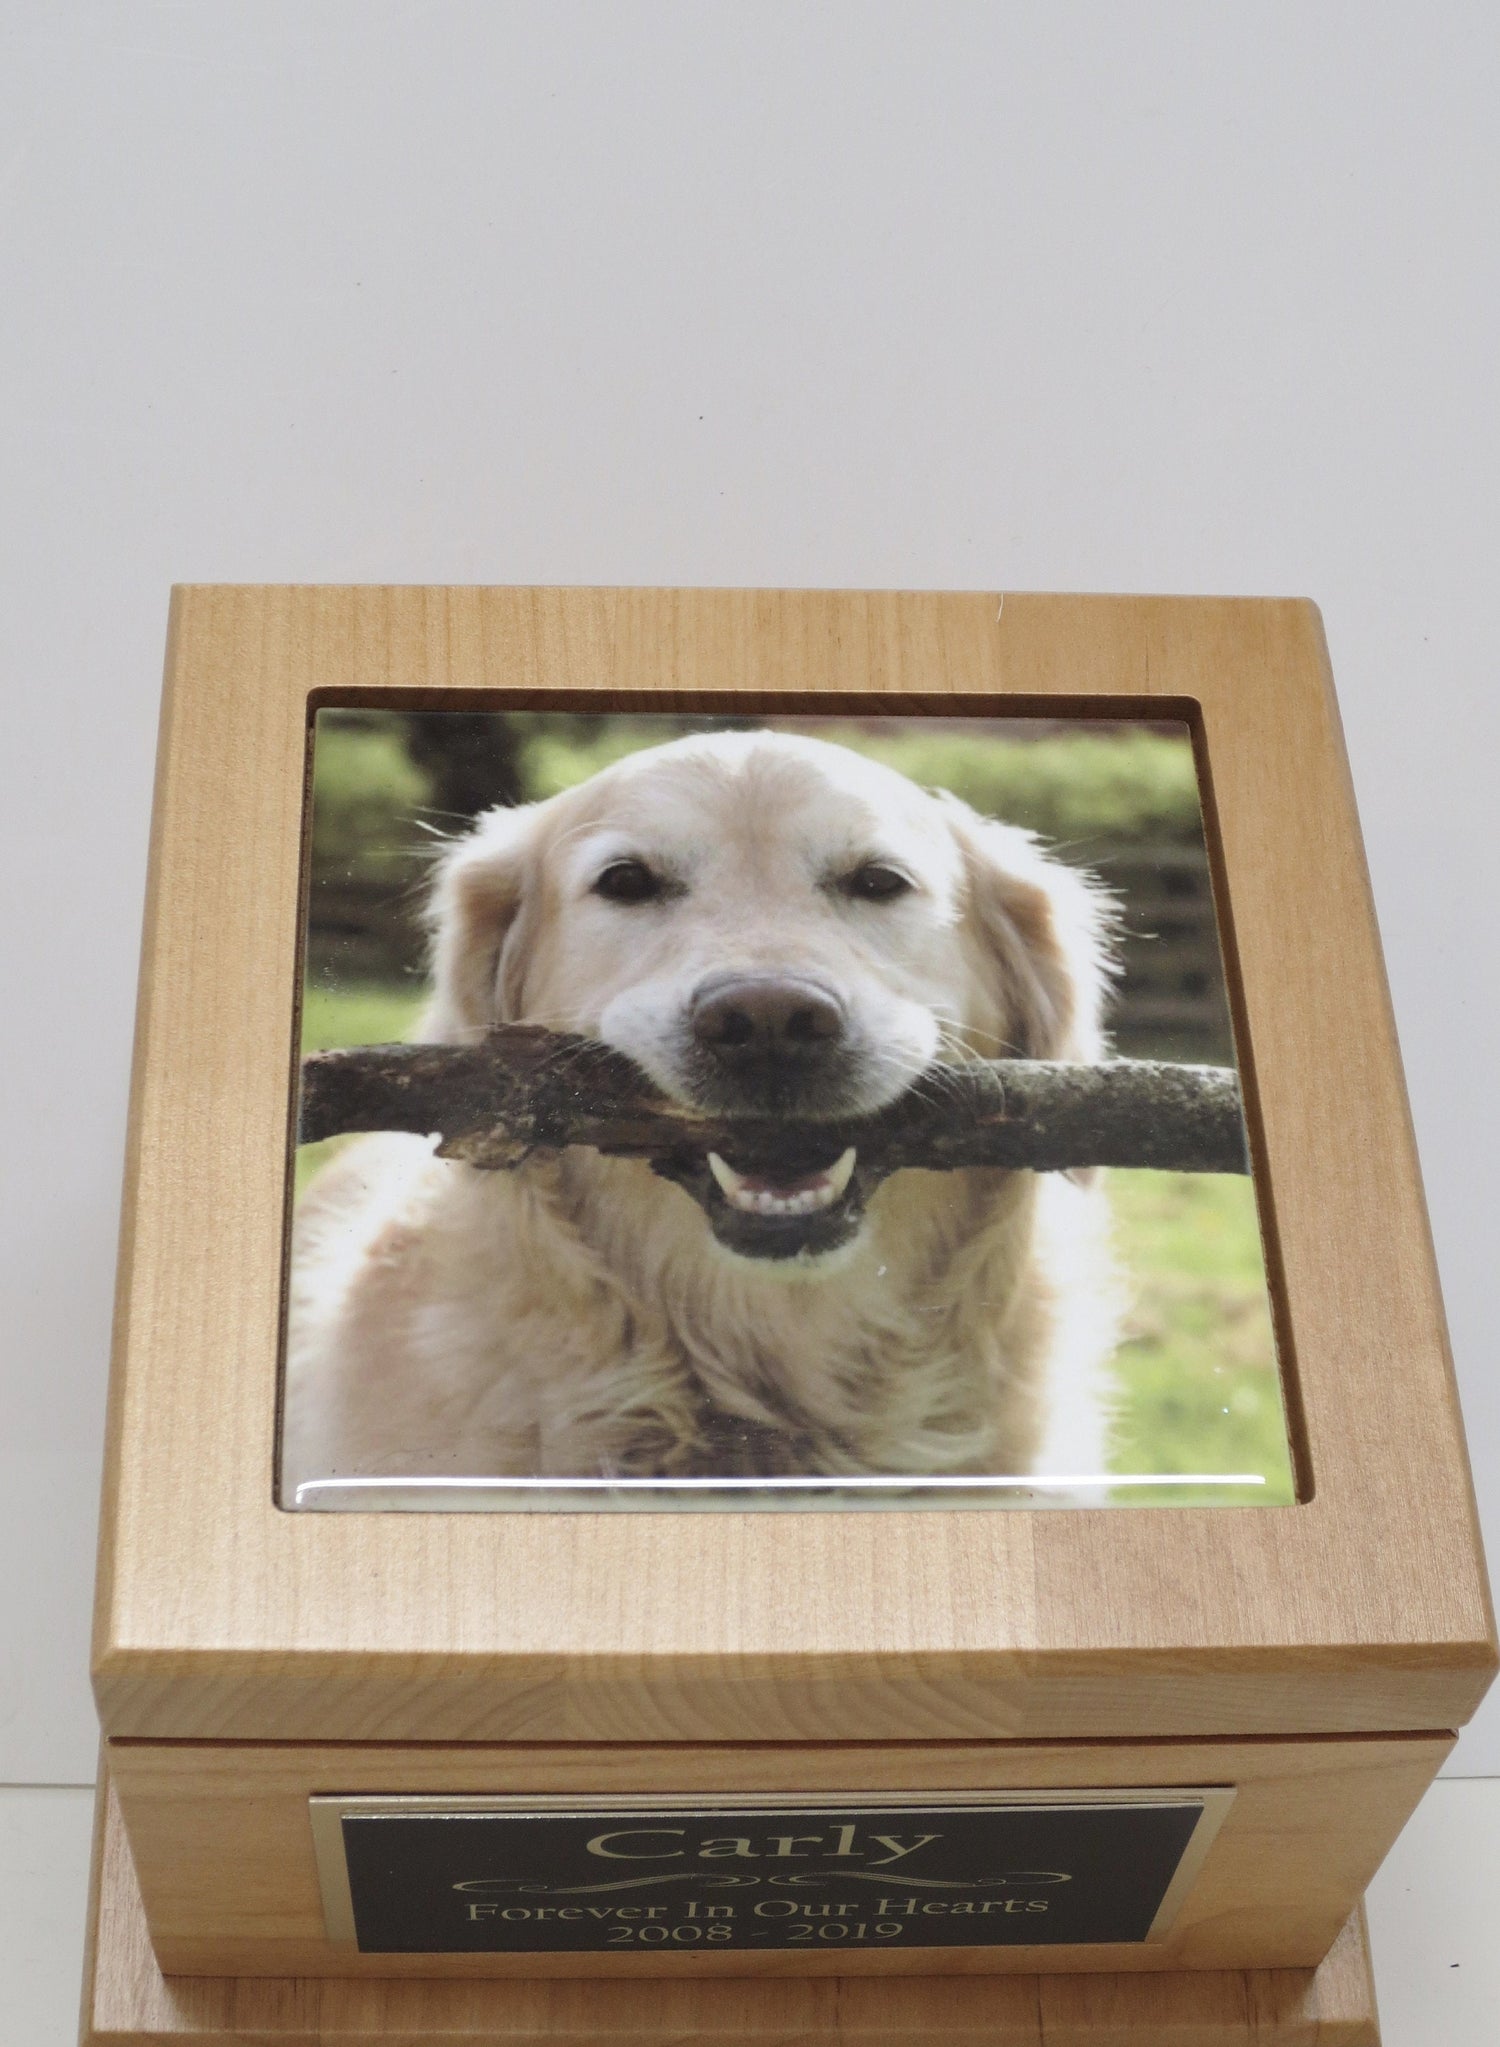 Pet Urn Dog Urn Pet Memorial Keepsake Cremation Urn Custom Photo Tile & Personalized Engraved Tag Red Alder Medium to Large Dog UpTo 60lb